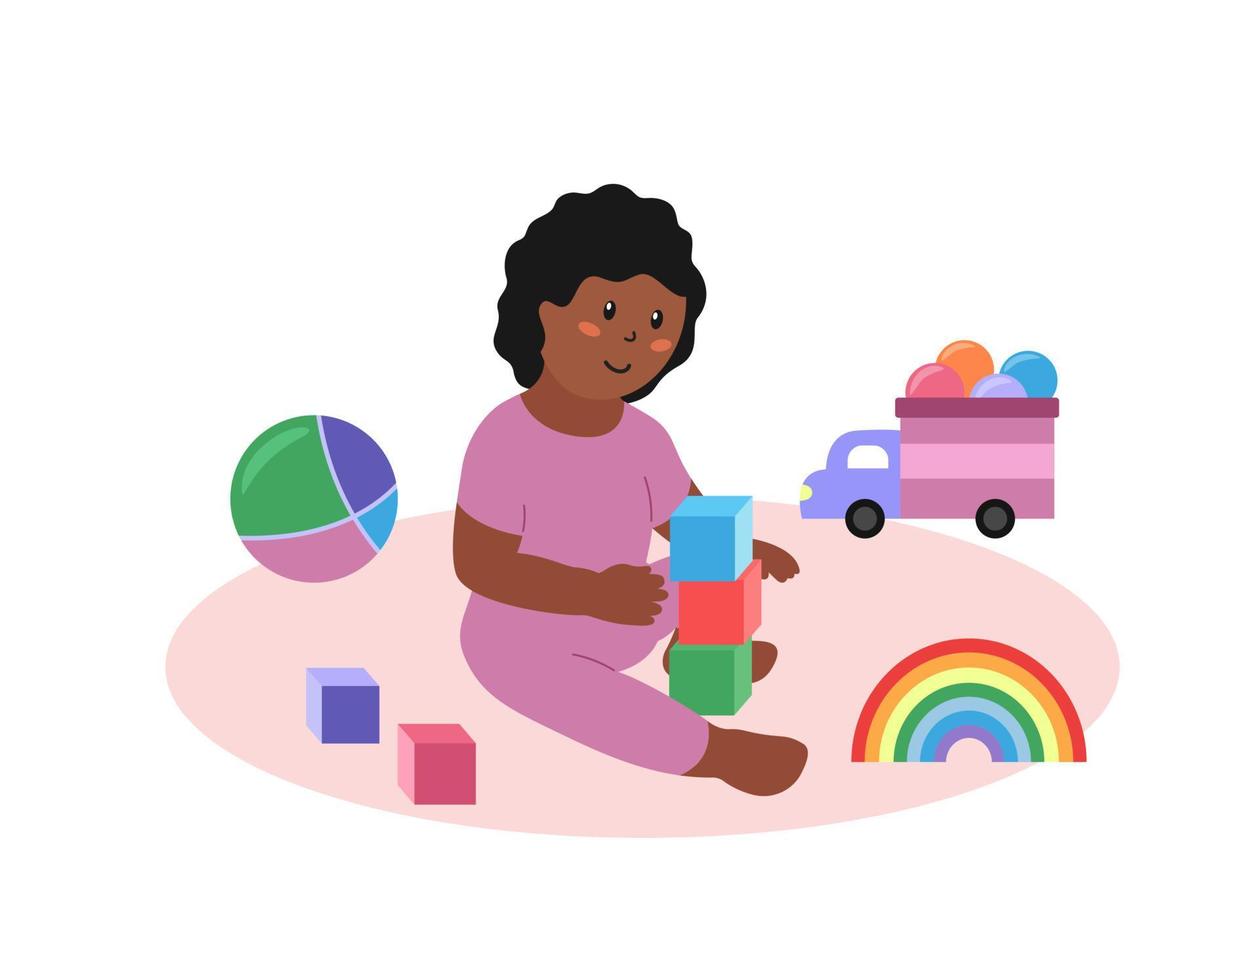 bambina seduta e giocare a giocattoli isolati. bambino bambino afroamericano felice con cubi, auto, palla e altri giocattoli colorati. illustrazione vettoriale piatta